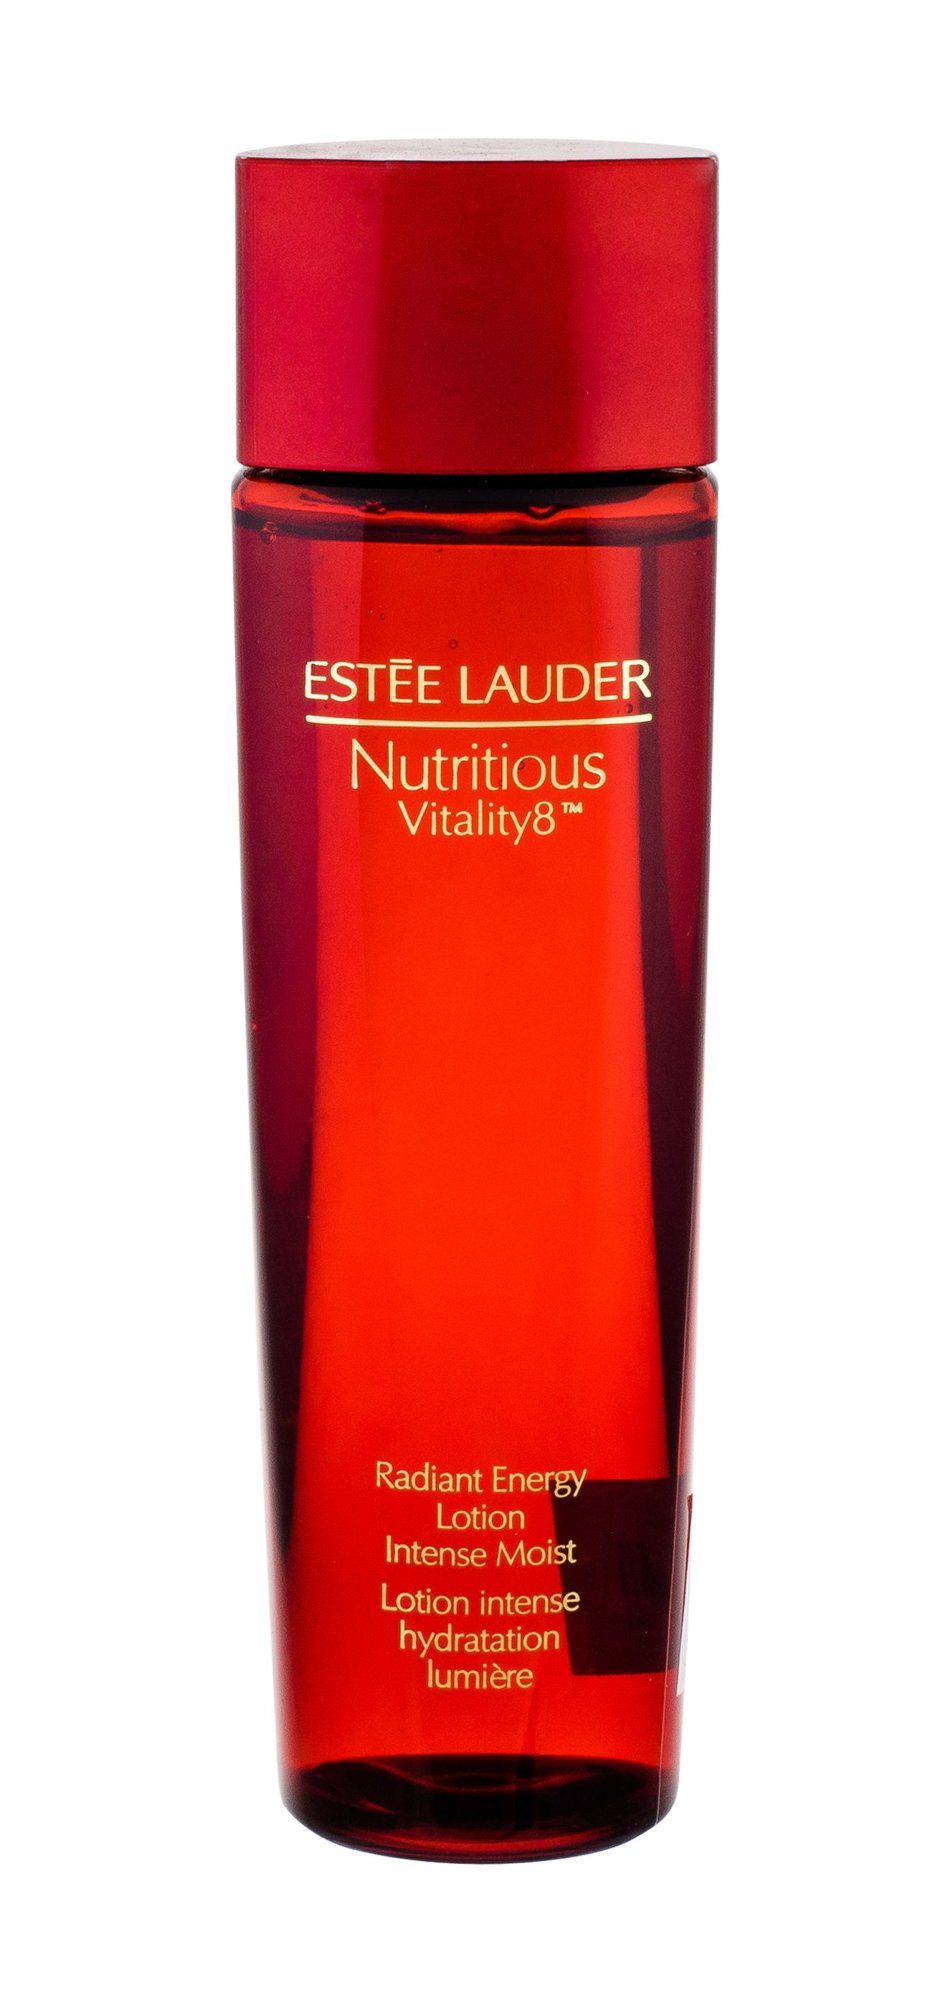 Esteé Lauder Nutritious Vitality8 valomasis vanduo veidui